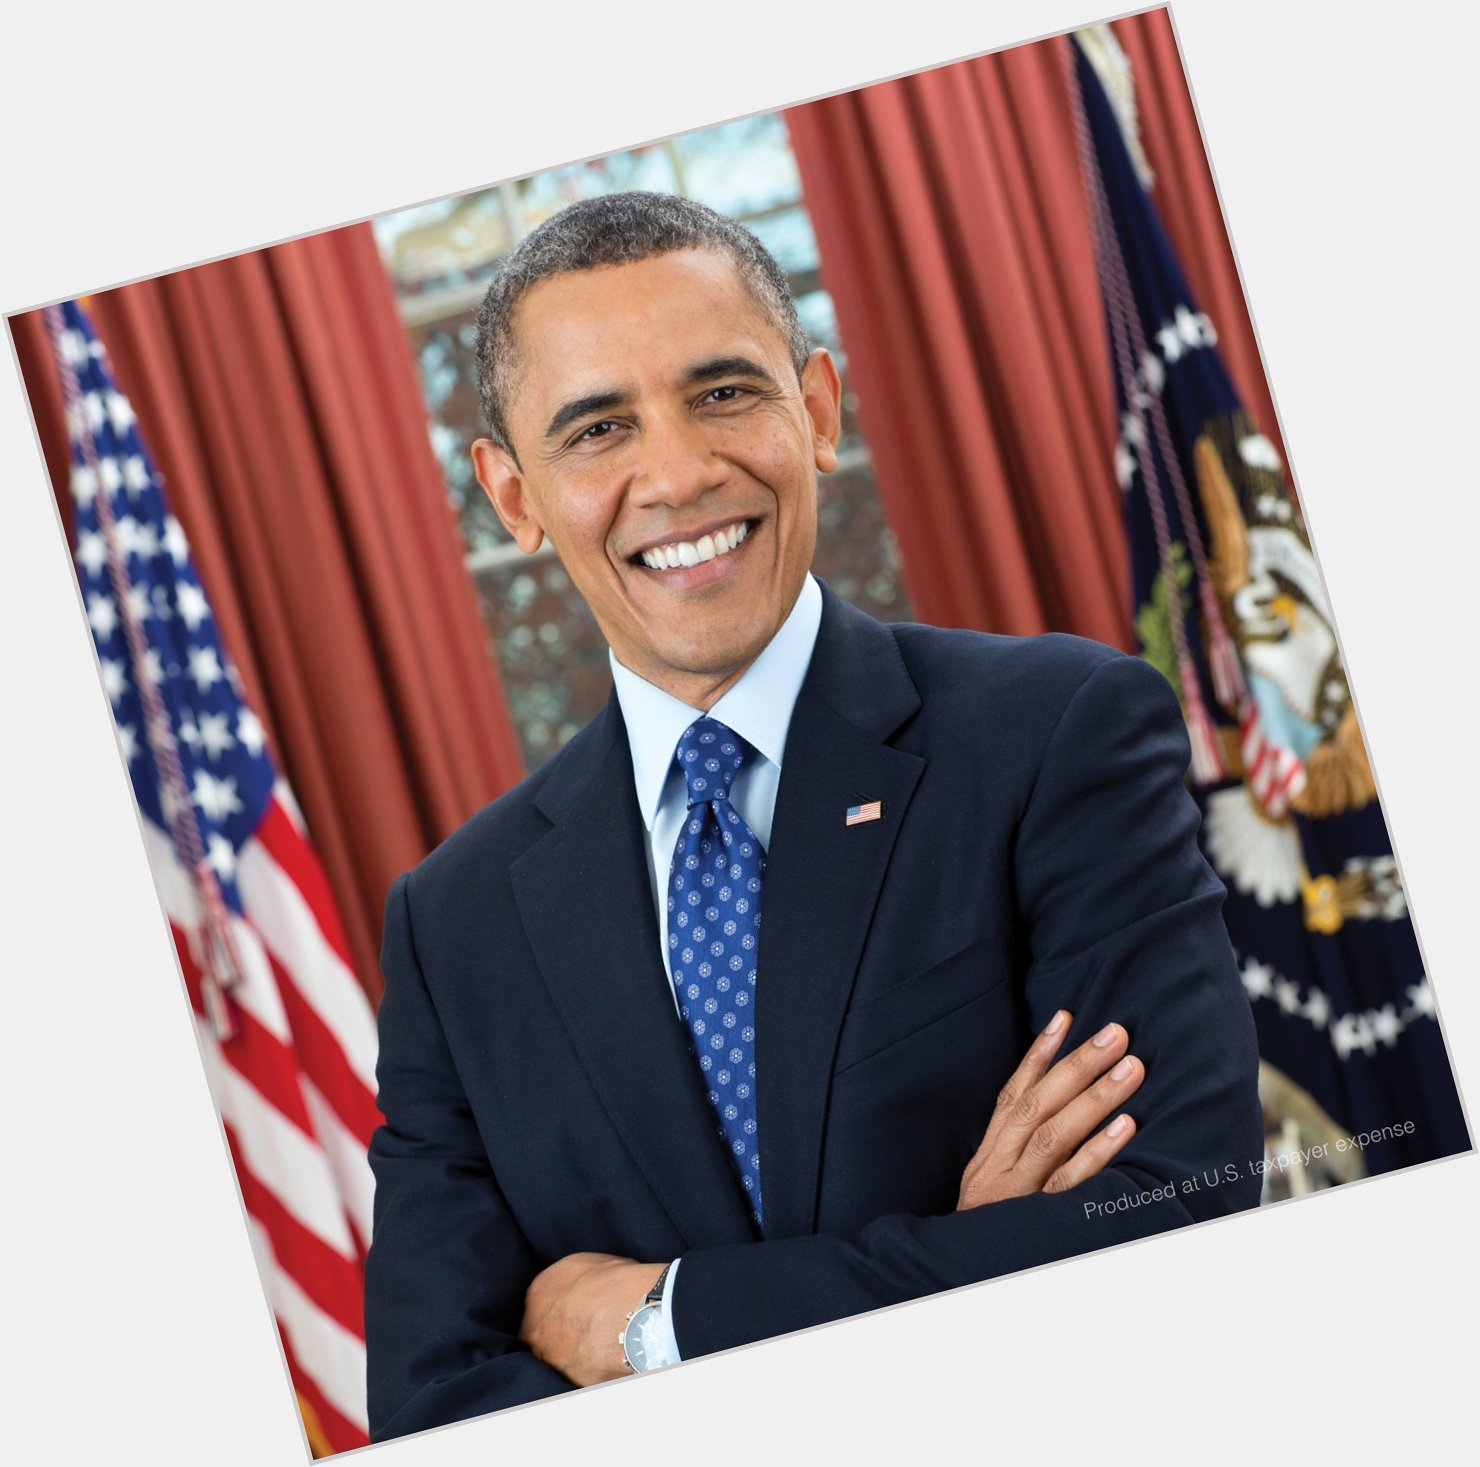 Happy birthday, former President Barack Obama! 